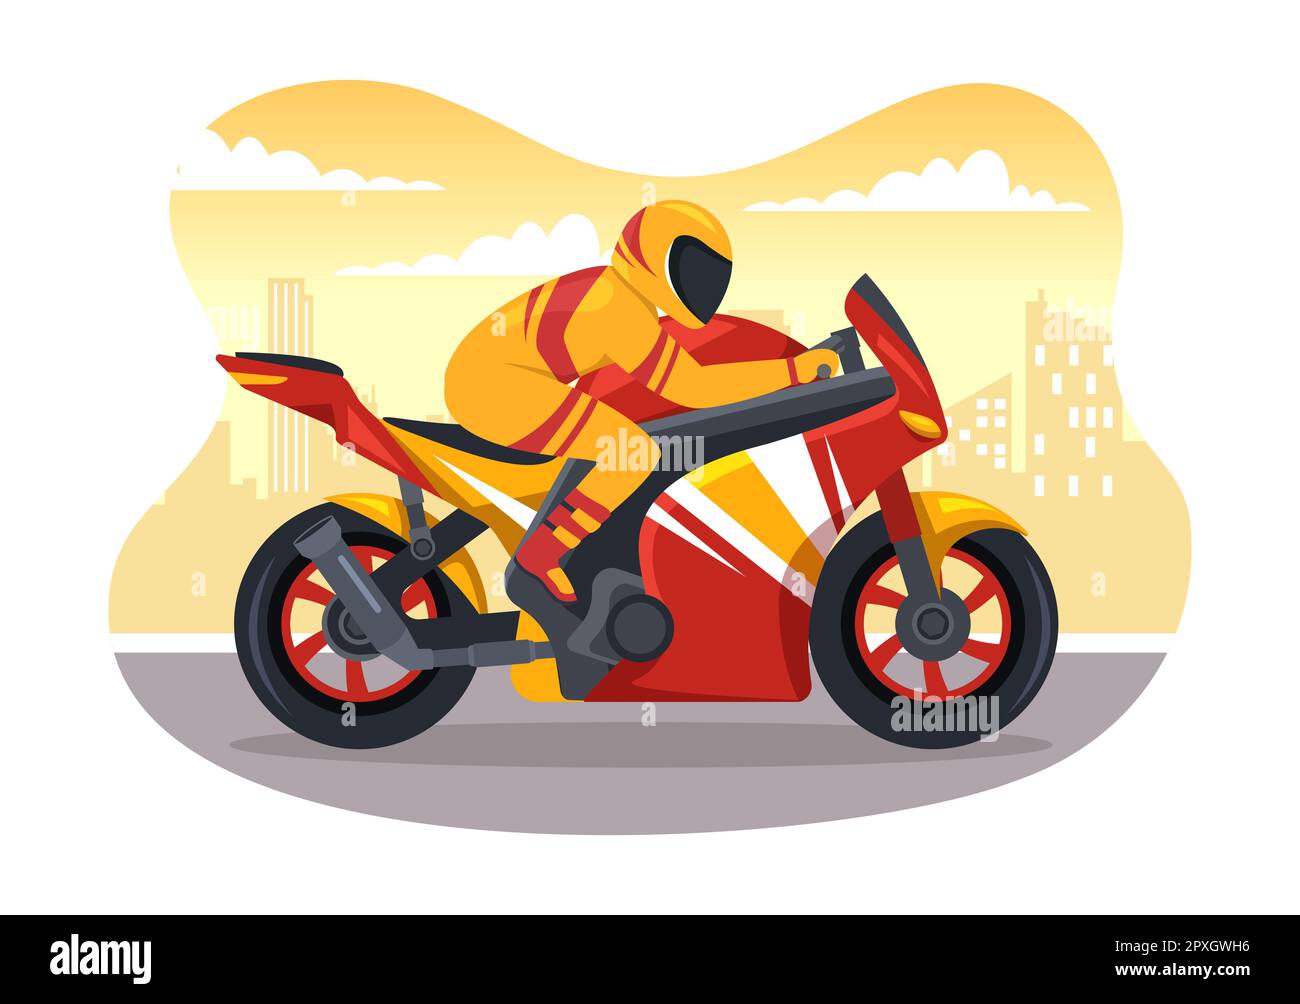 Motorrad Racing Championship auf der Rennstrecke Illustration mit Racer Riding Motor für Landing Page in Flat Cartoon handgezeichneten Vorlagen Stockfoto